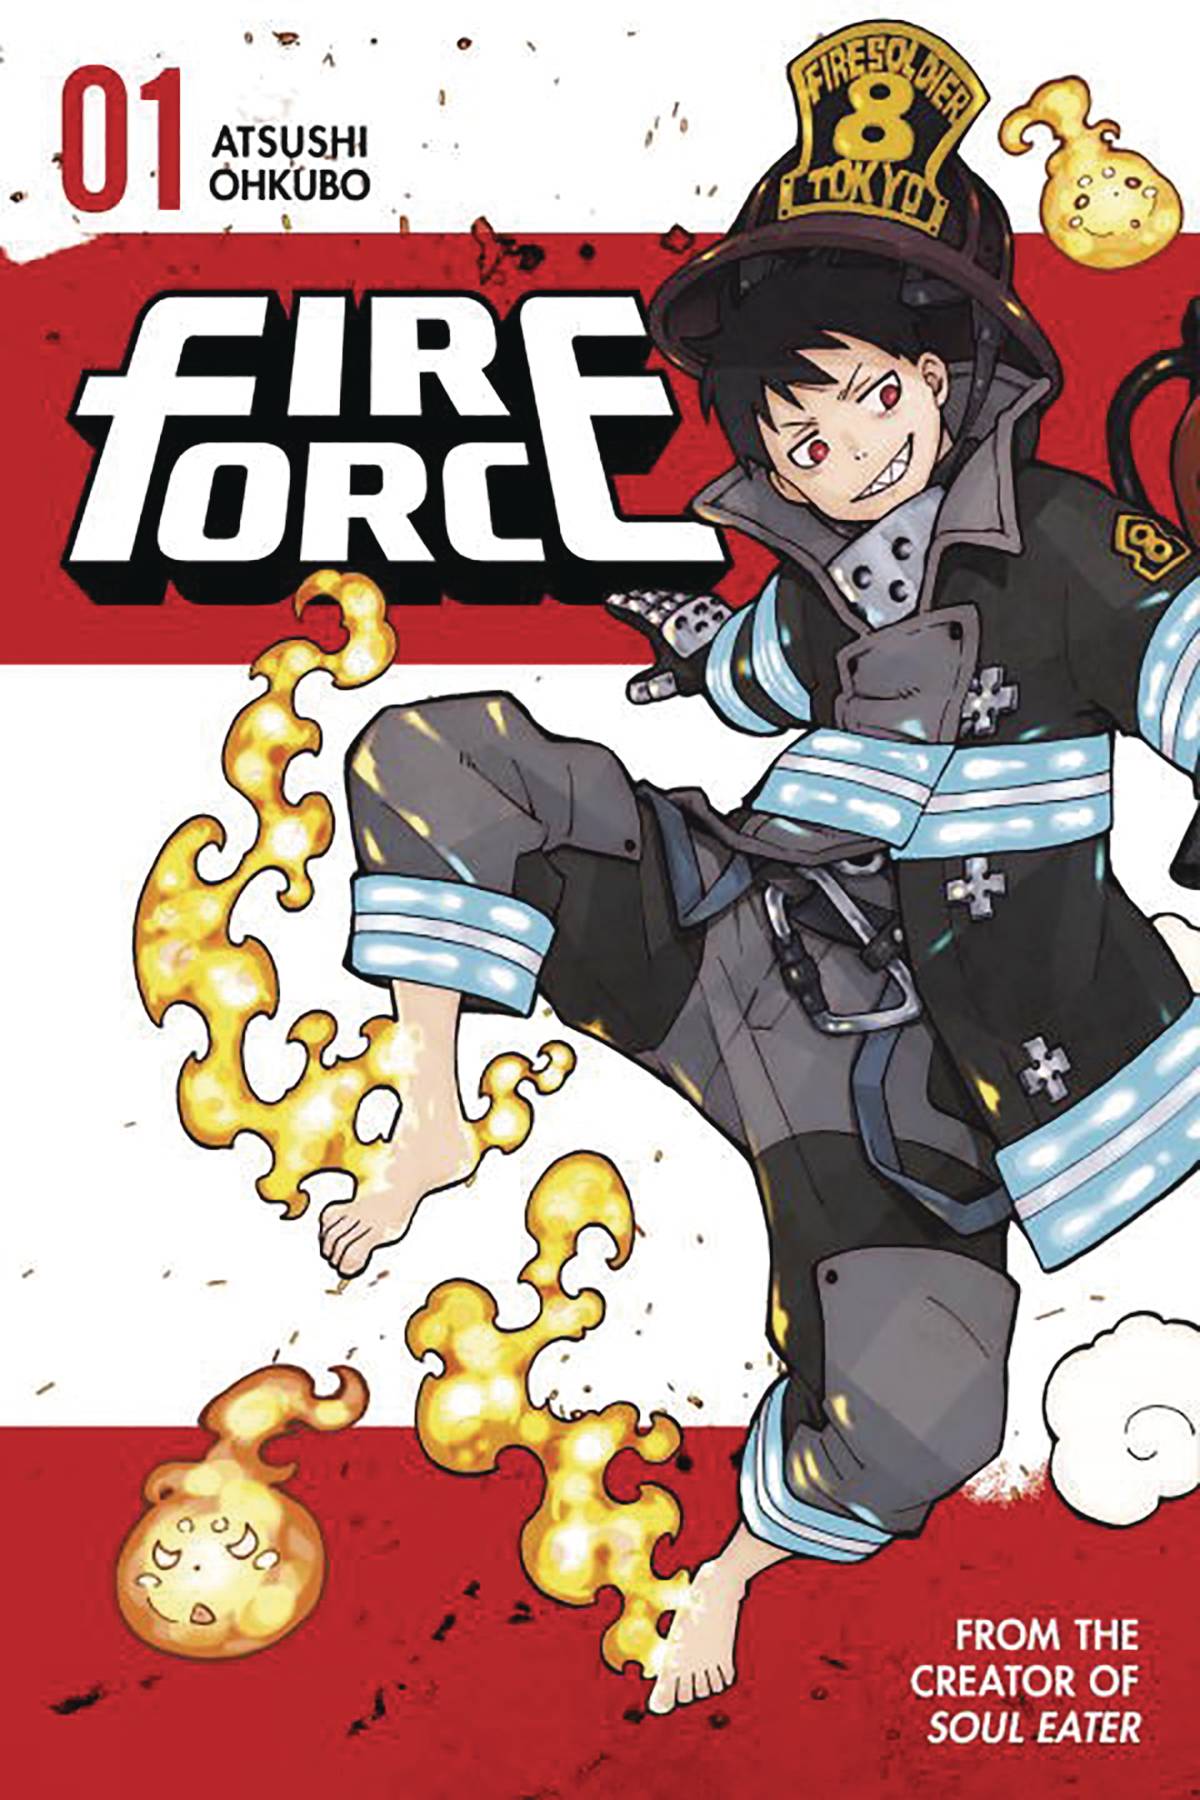 The One Stop Shop Comics & Games Fire Force Omnibus Gn Vol 01 Vol 1 - 3 (C: 0-1-1) (11/23/2022) KODANSHA COMICS